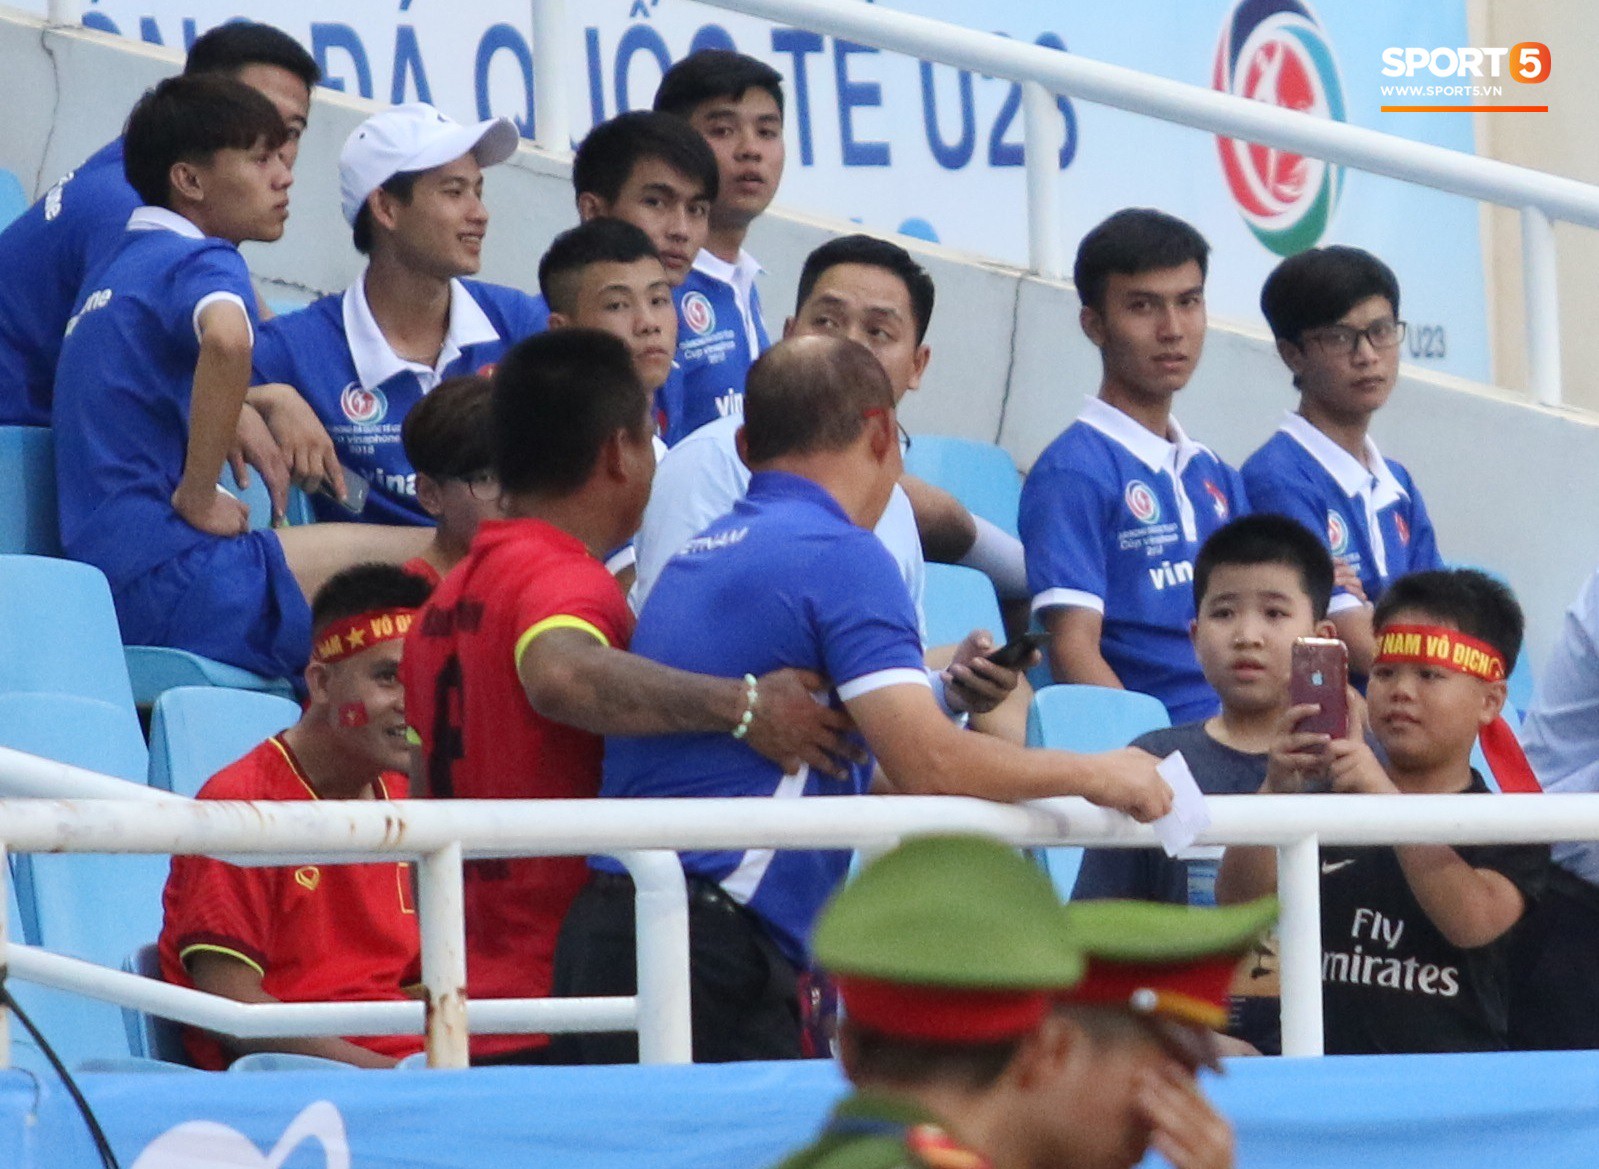 Những điều thú vị bạn có thể đã bỏ qua trên khán đài trong chiến thắng của U23 Việt Nam - Ảnh 2.